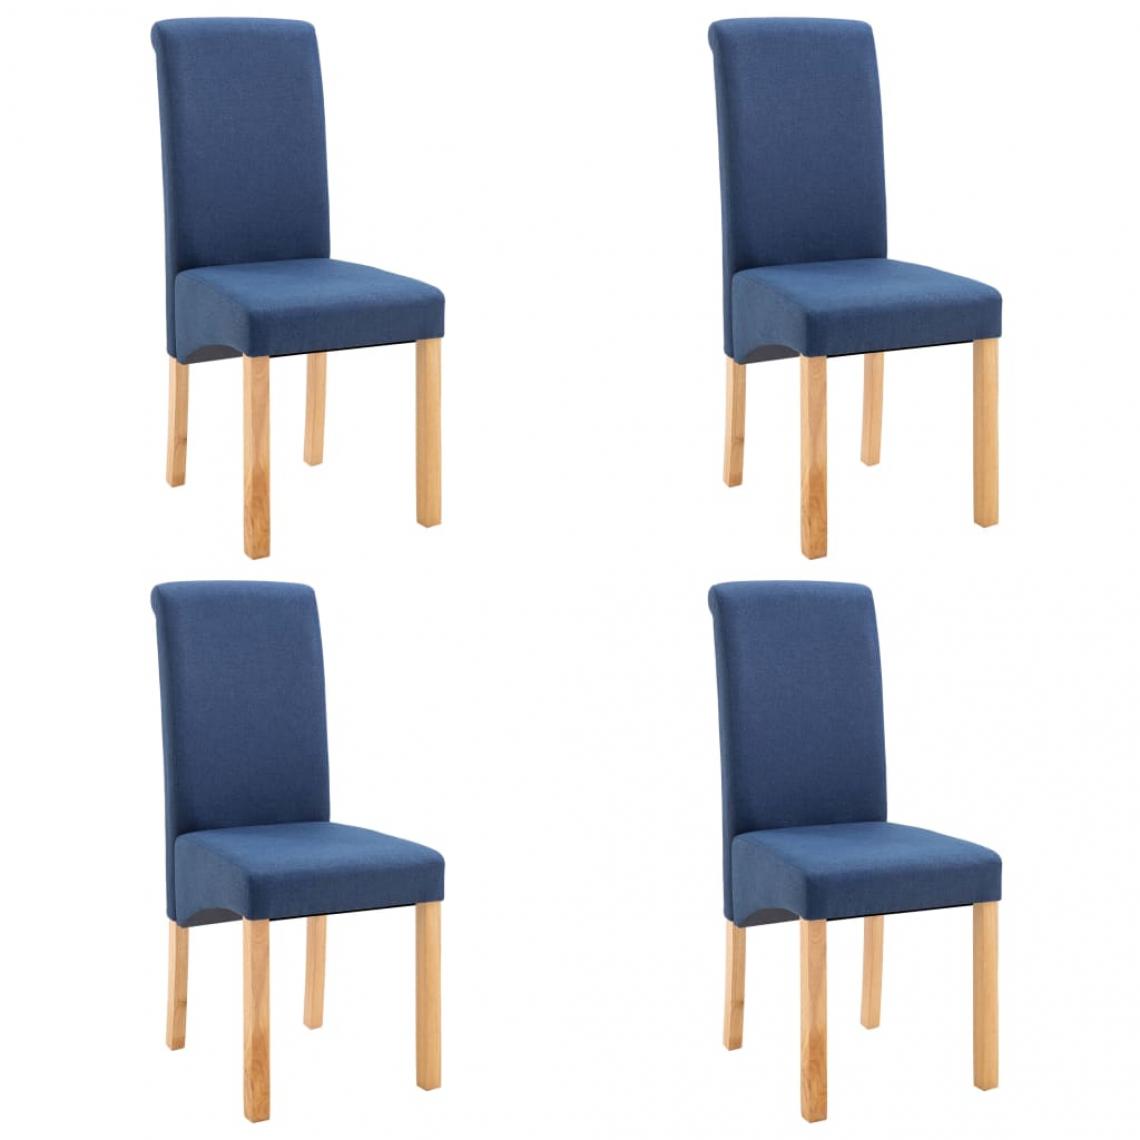 Decoshop26 - Lot de 4 chaises de salle à manger cuisine design moderne tissu bleu CDS021294 - Chaises